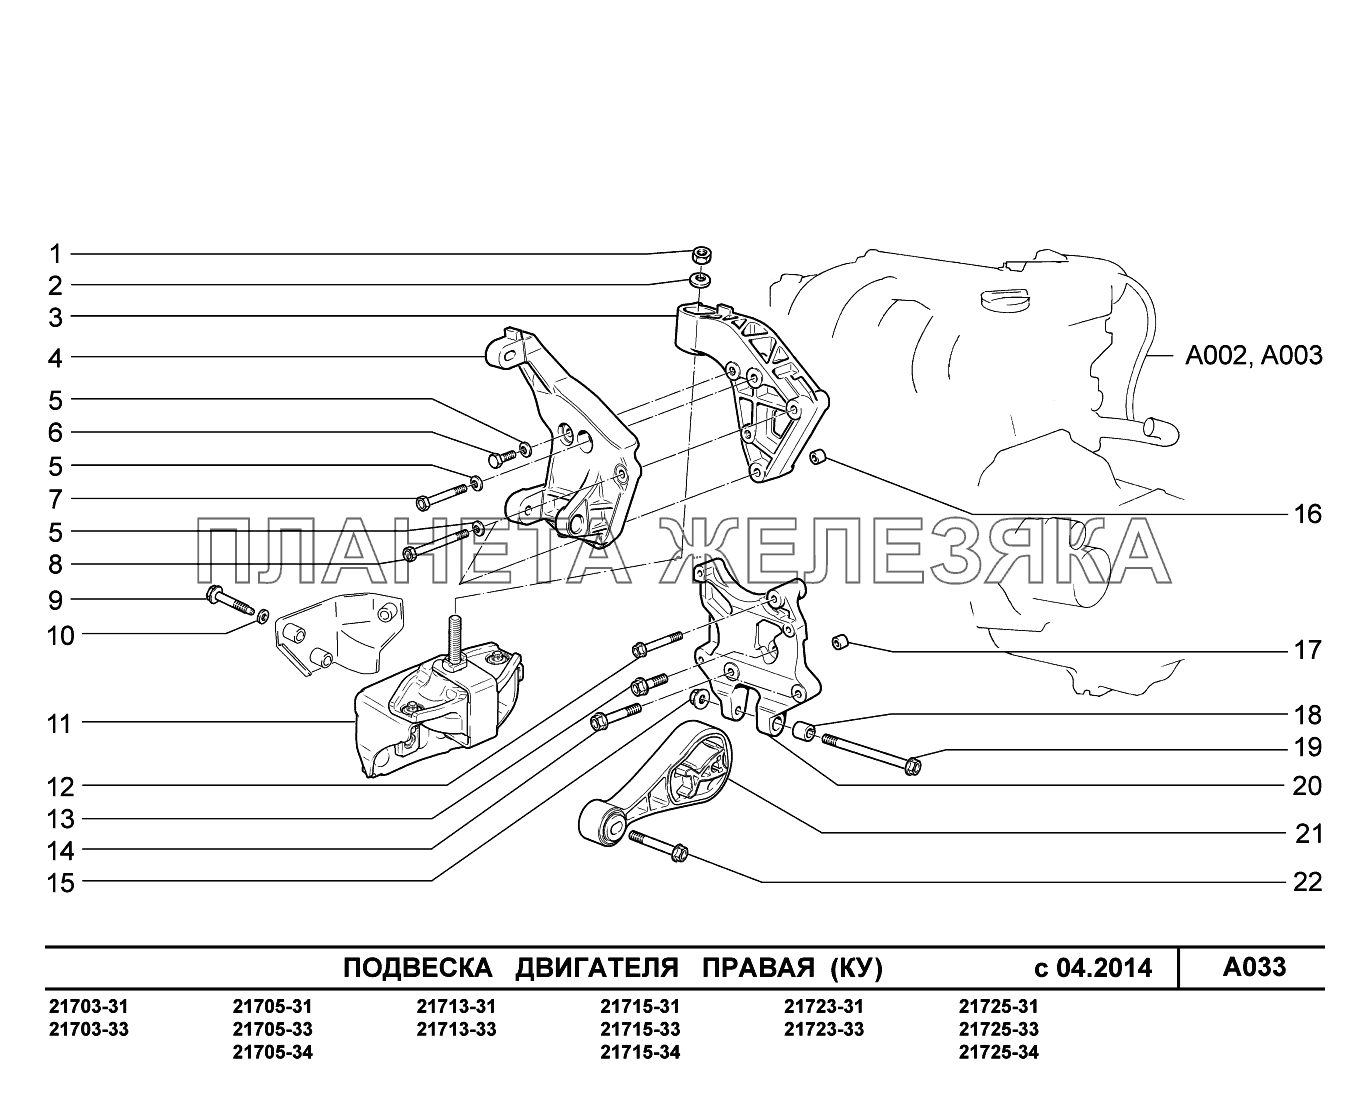 A033. Подвеска двигателя правая ВАЗ-2170 